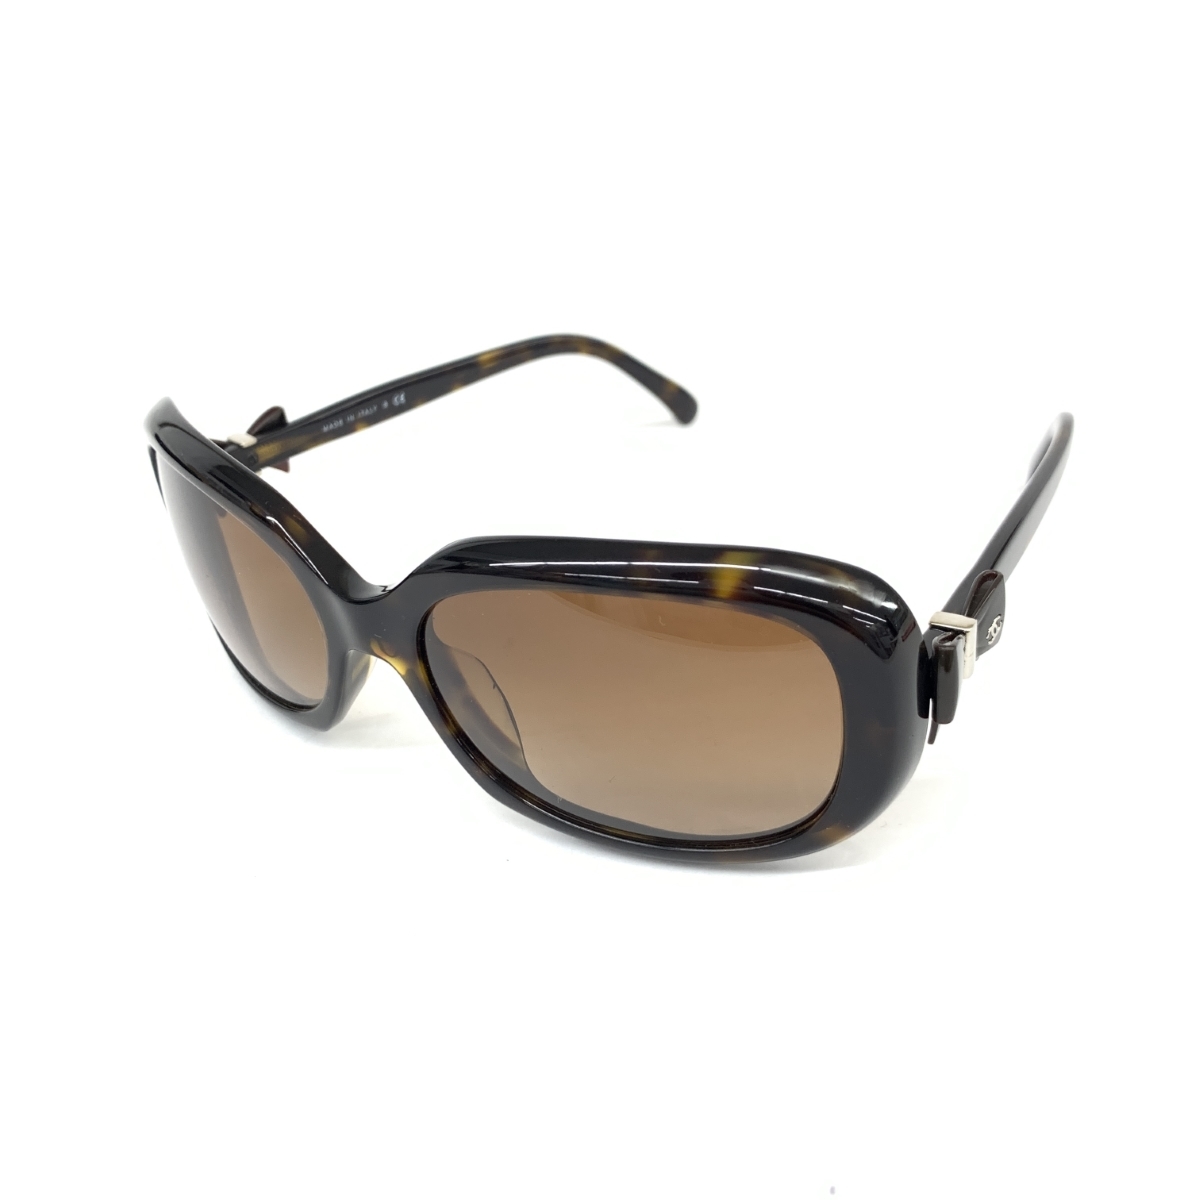 良好◆CHANEL シャネル サングラス◆5170-A ブラウン リボン レディース メガネ 眼鏡 サングラス sunglasses 服飾小物